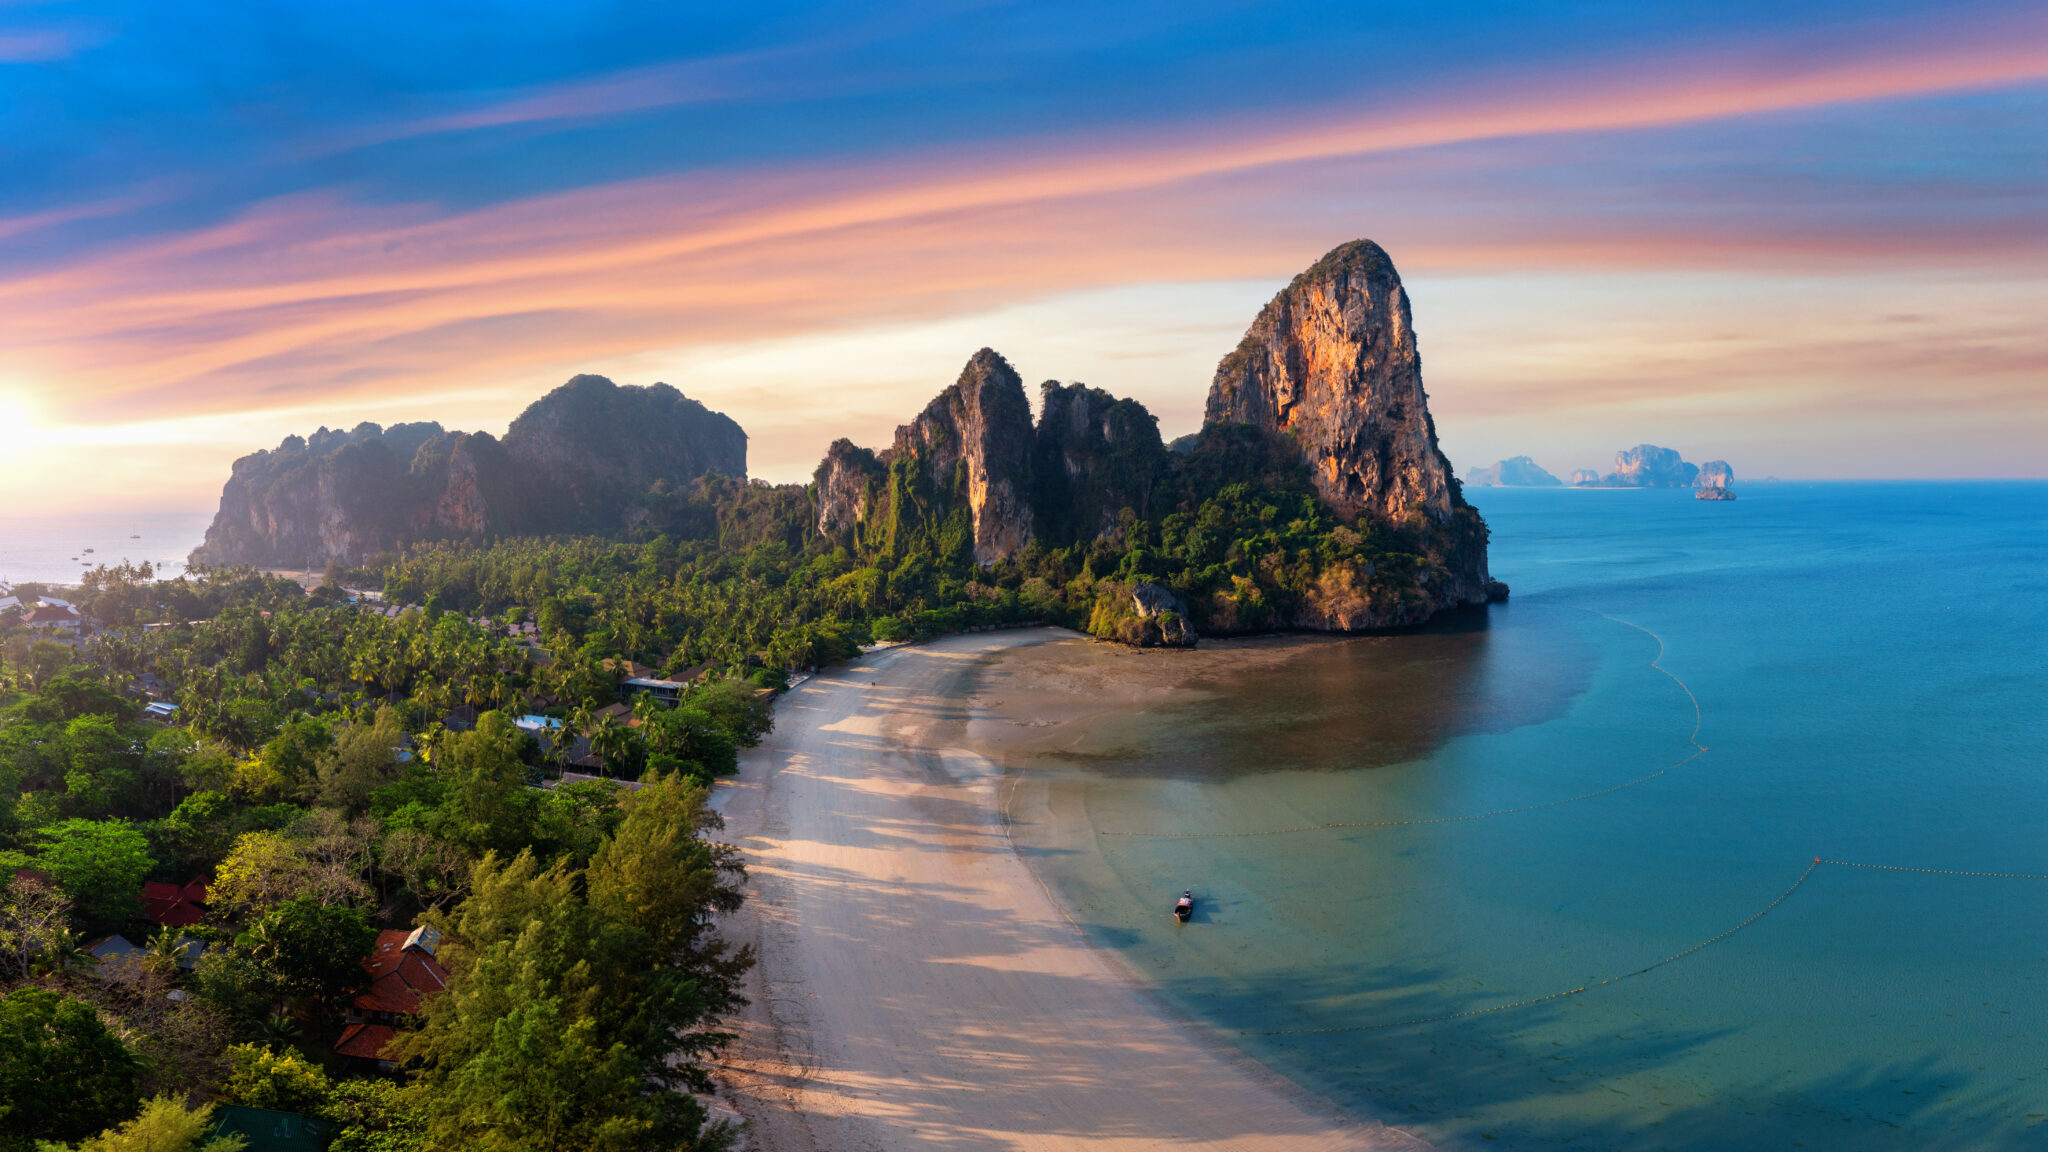 Railay Beach: Thailand's Hidden Paradise